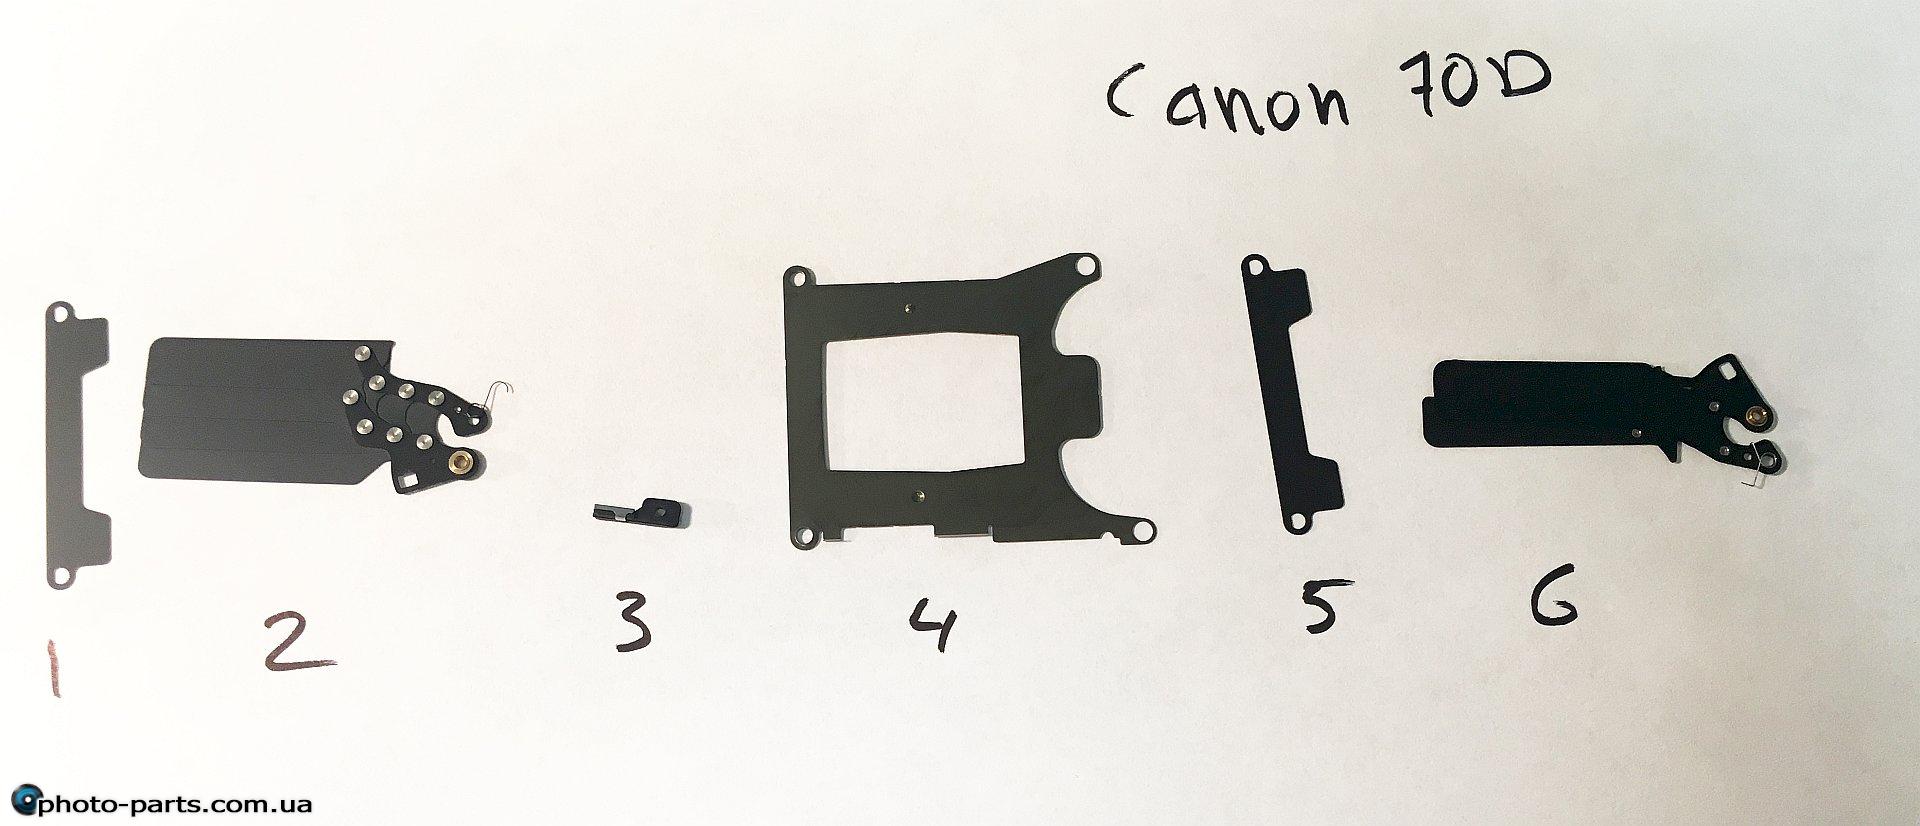 ZOOM Canon 70D mirror box